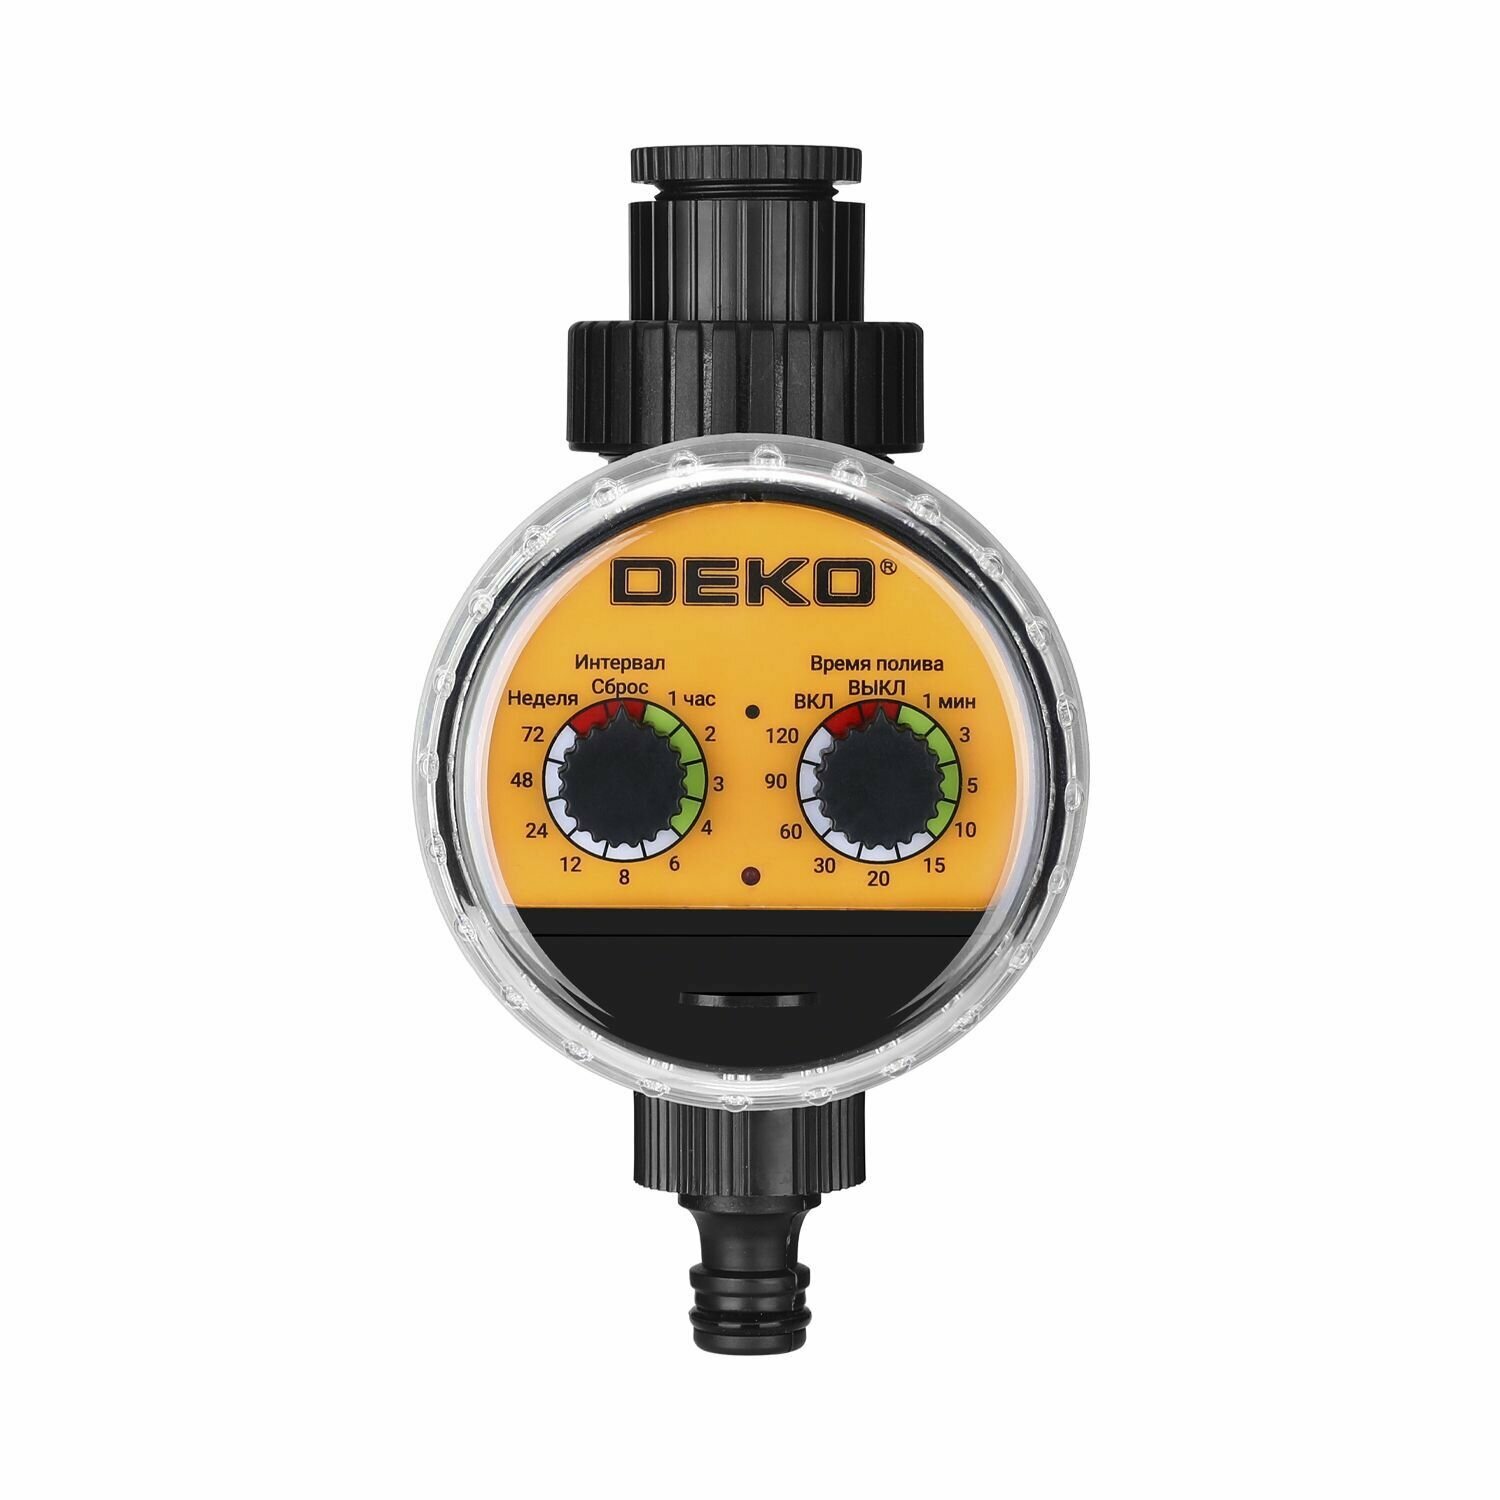 Таймер для полива Deko DKIT04, электронный, с шаровым механизмом